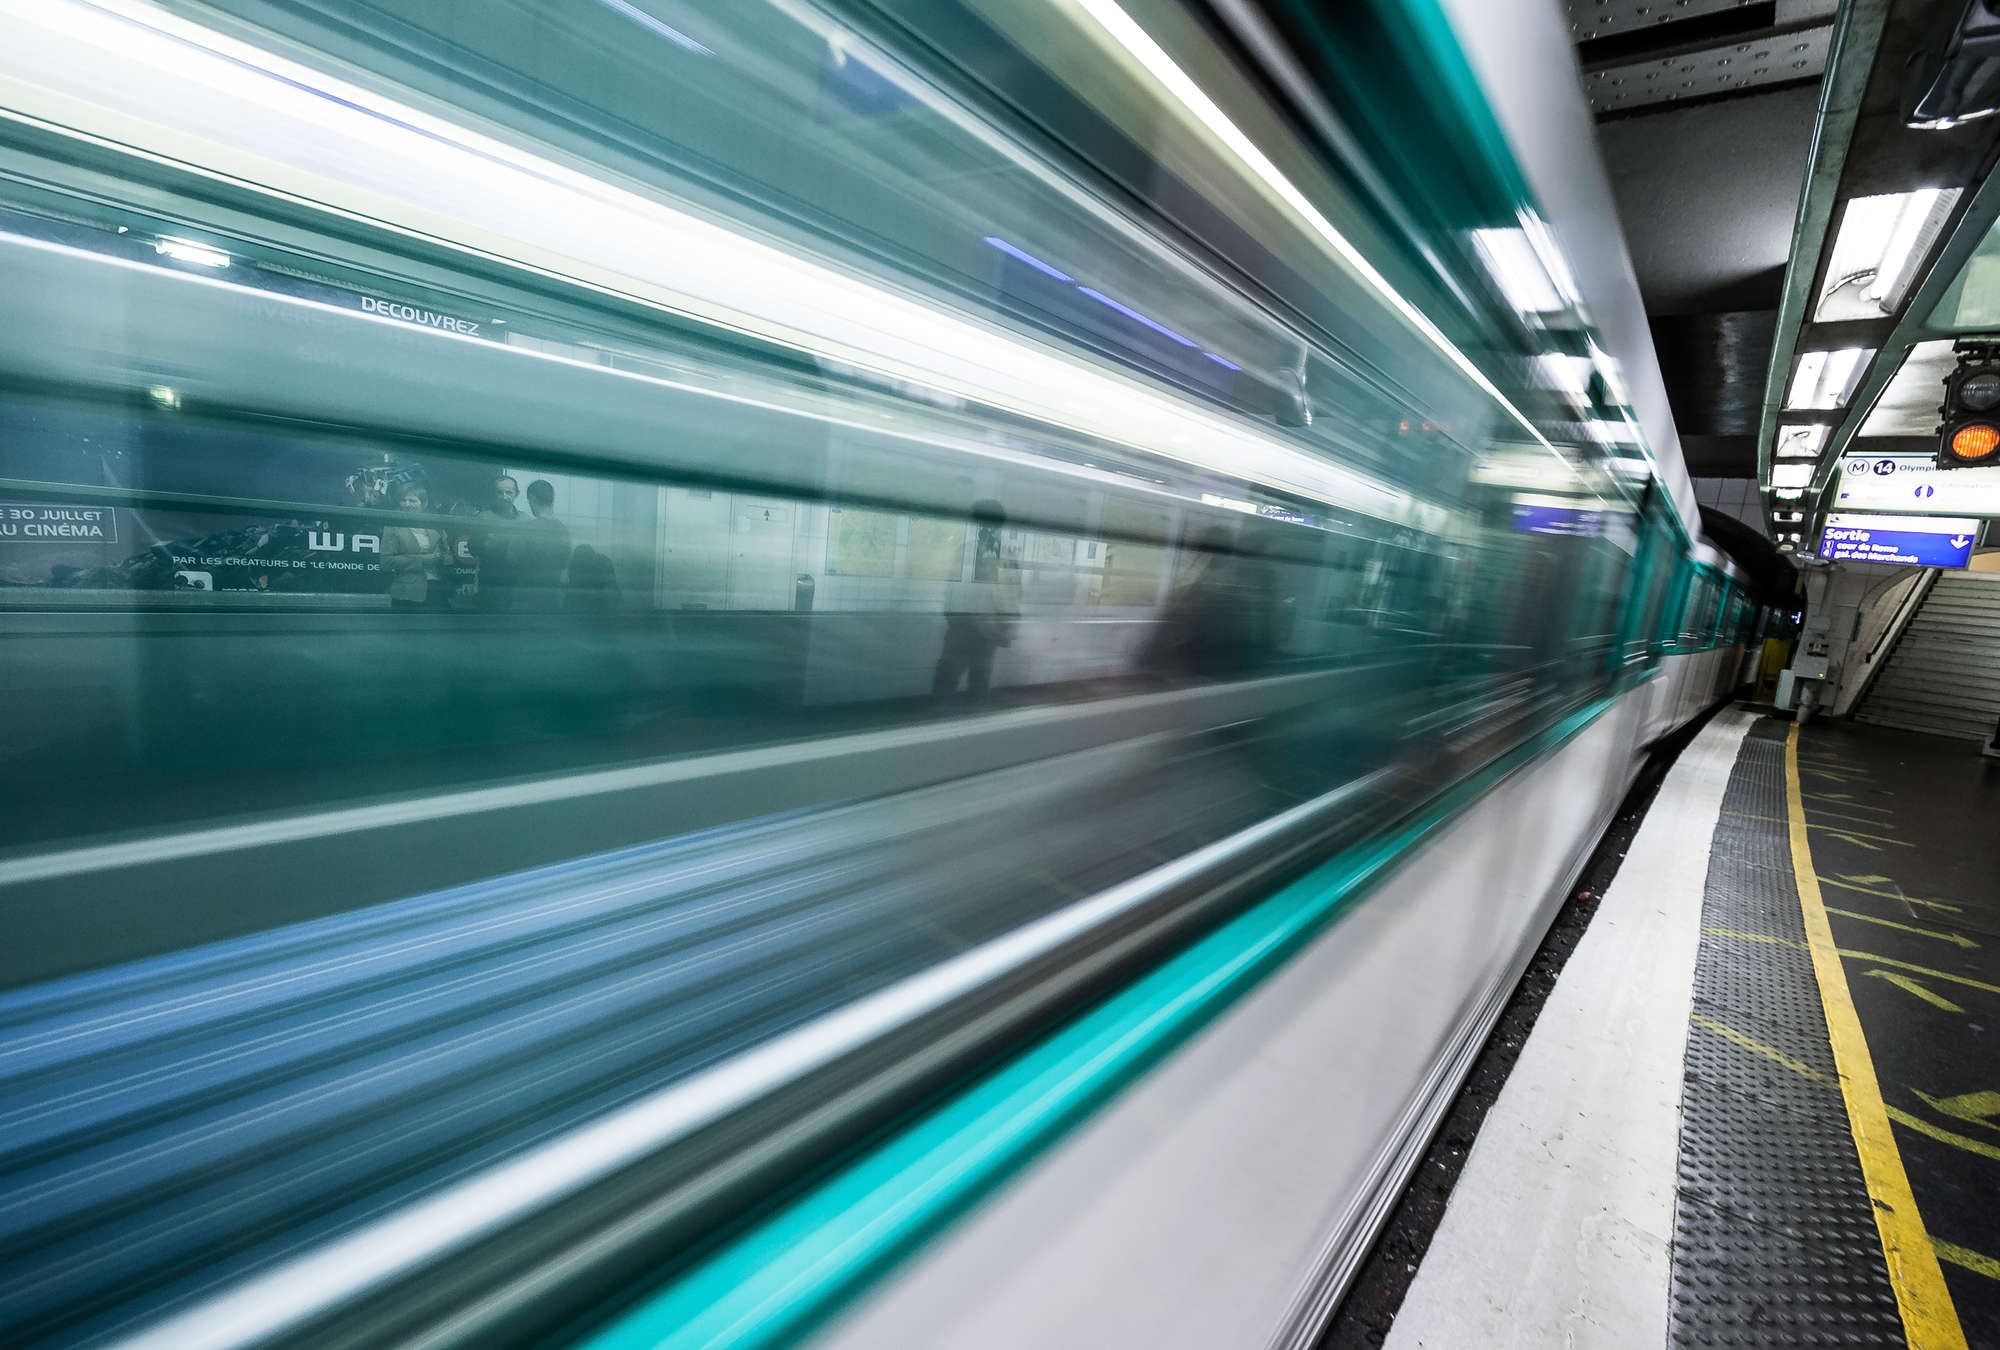             Fototapete Einfahrender Zug – Metro in Paris
        